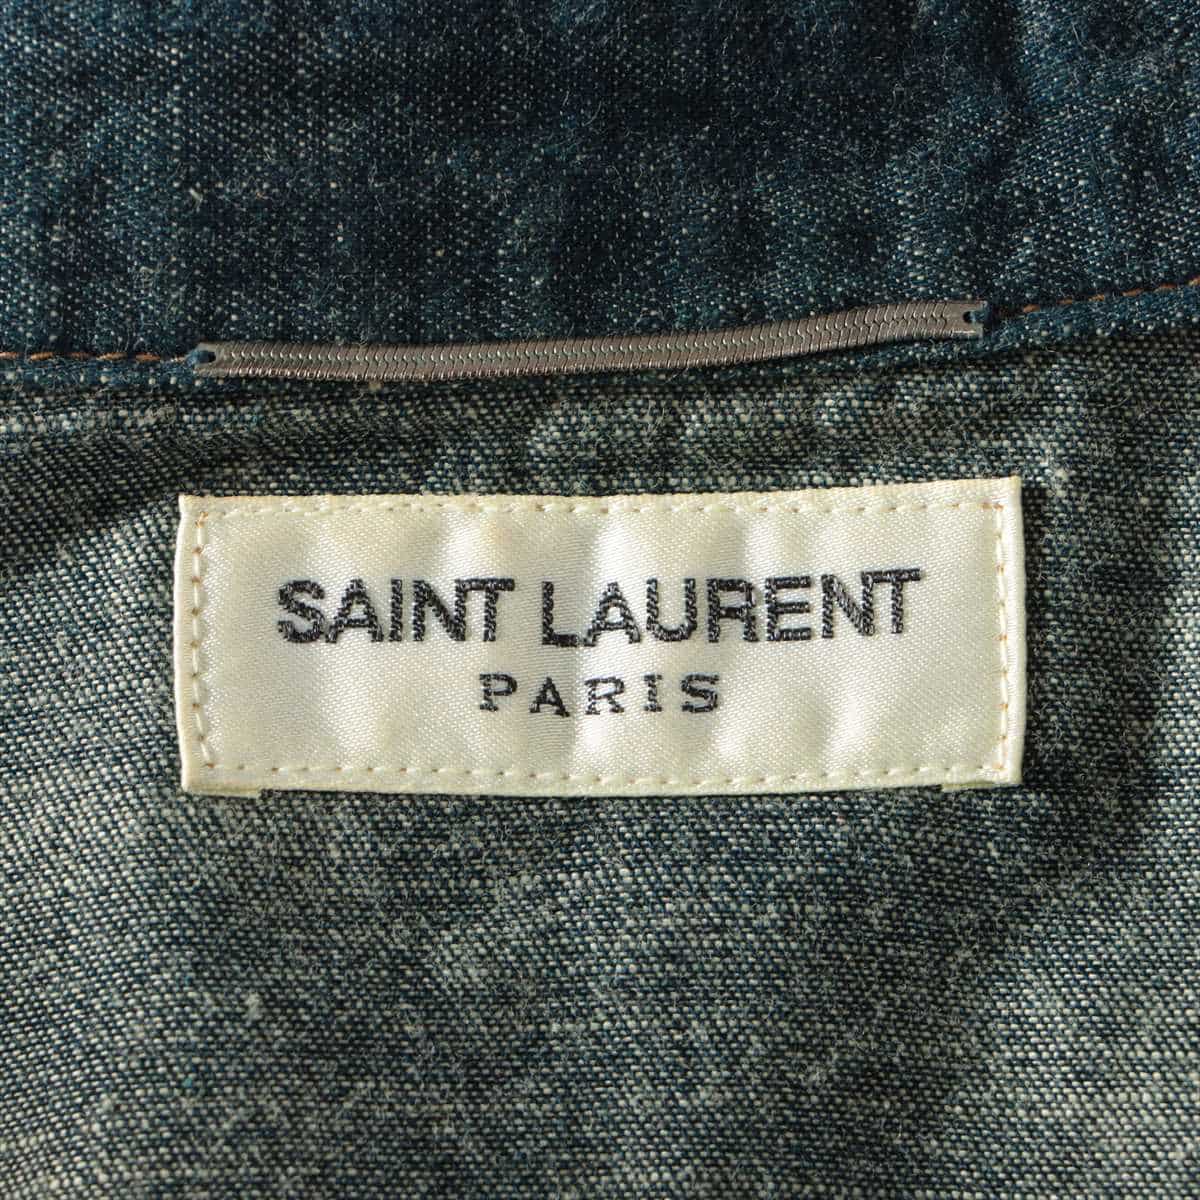 Saint Laurent Paris 15 years Cotton Denim shirt S Men's Navy blue